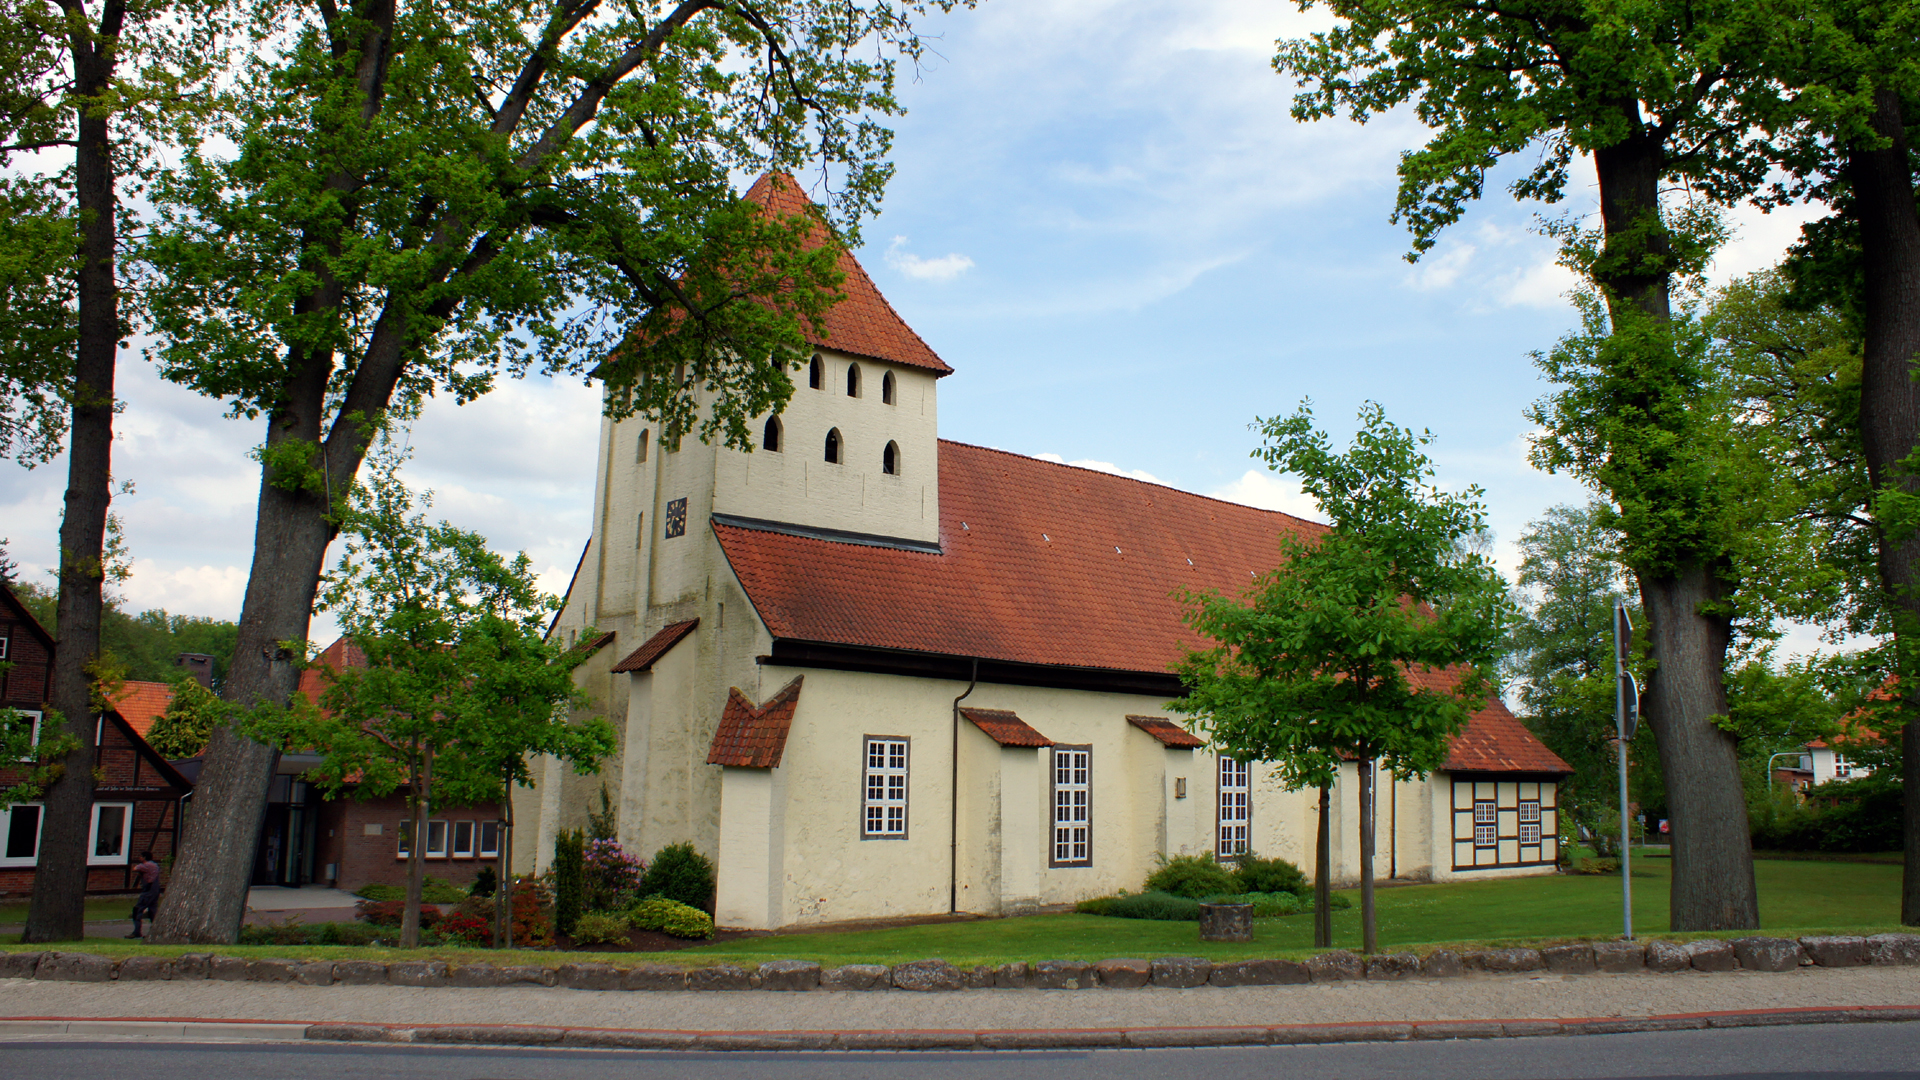 Fotos Deutschland, Hankensbüttel 01: Evangelisch-lutherische Kirche St. Pankratius